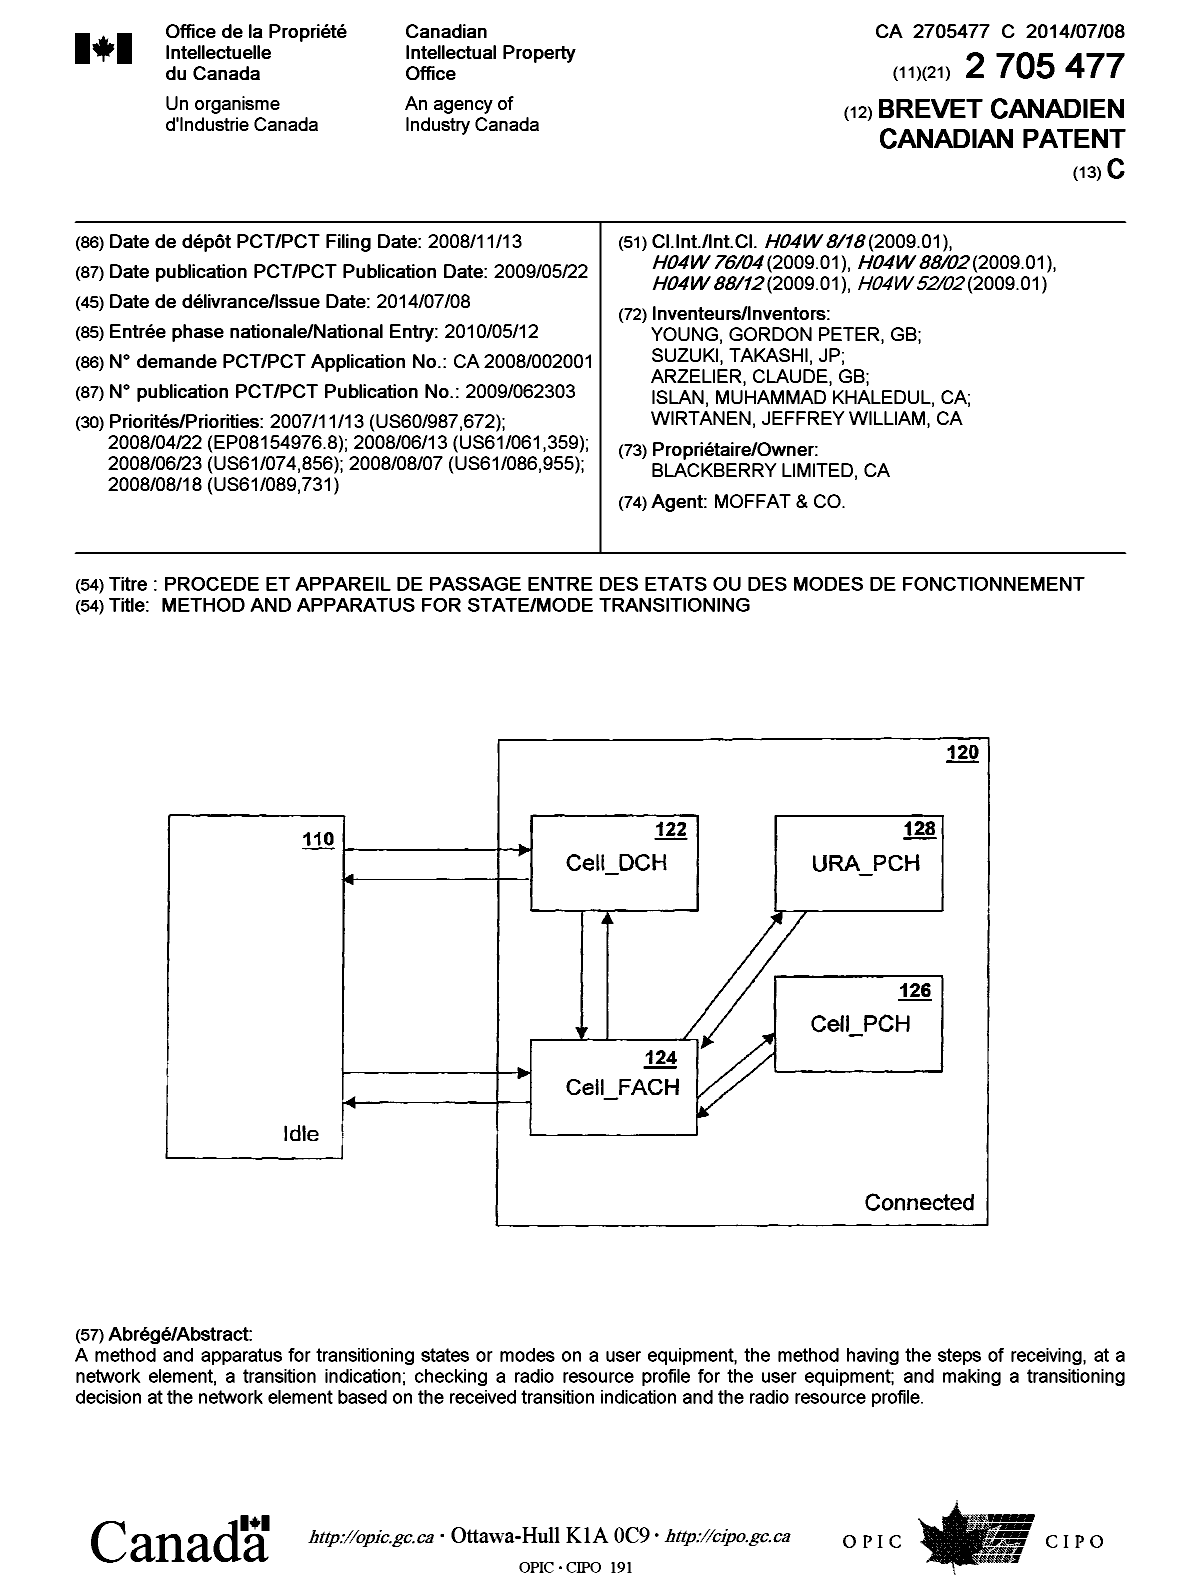 Document de brevet canadien 2705477. Page couverture 20140611. Image 1 de 1